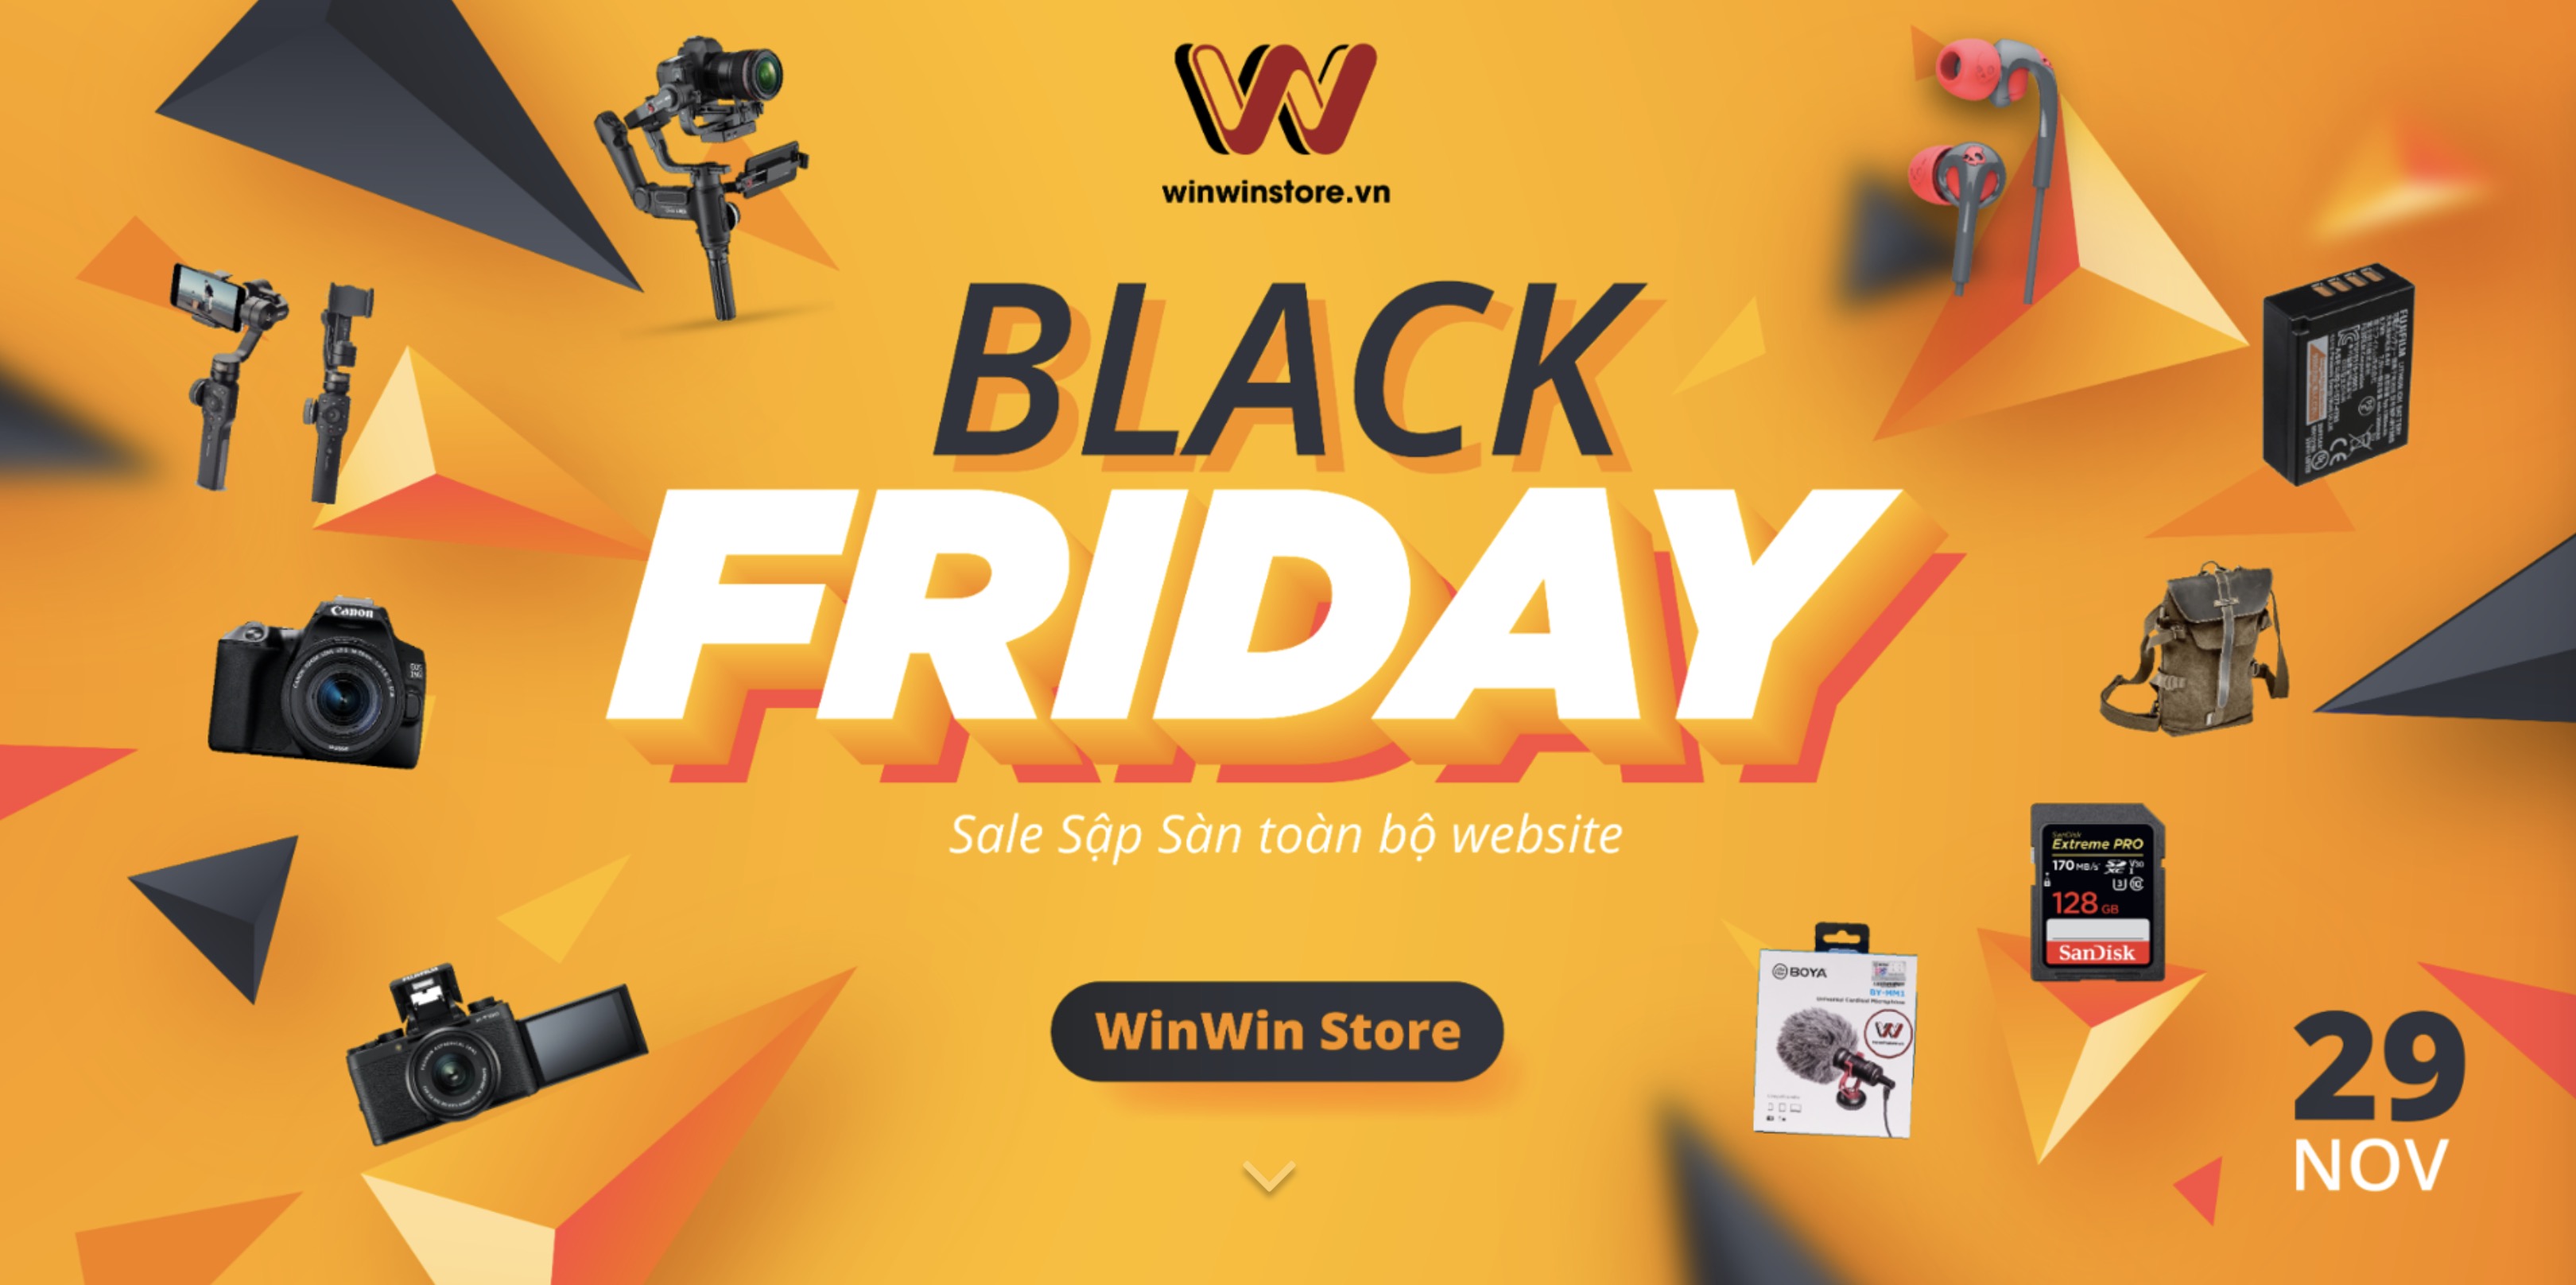 Sale sập sàn toàn bộ sản phẩm trên website WinWinStore.vn - Duy nhất trong ngày 29/11